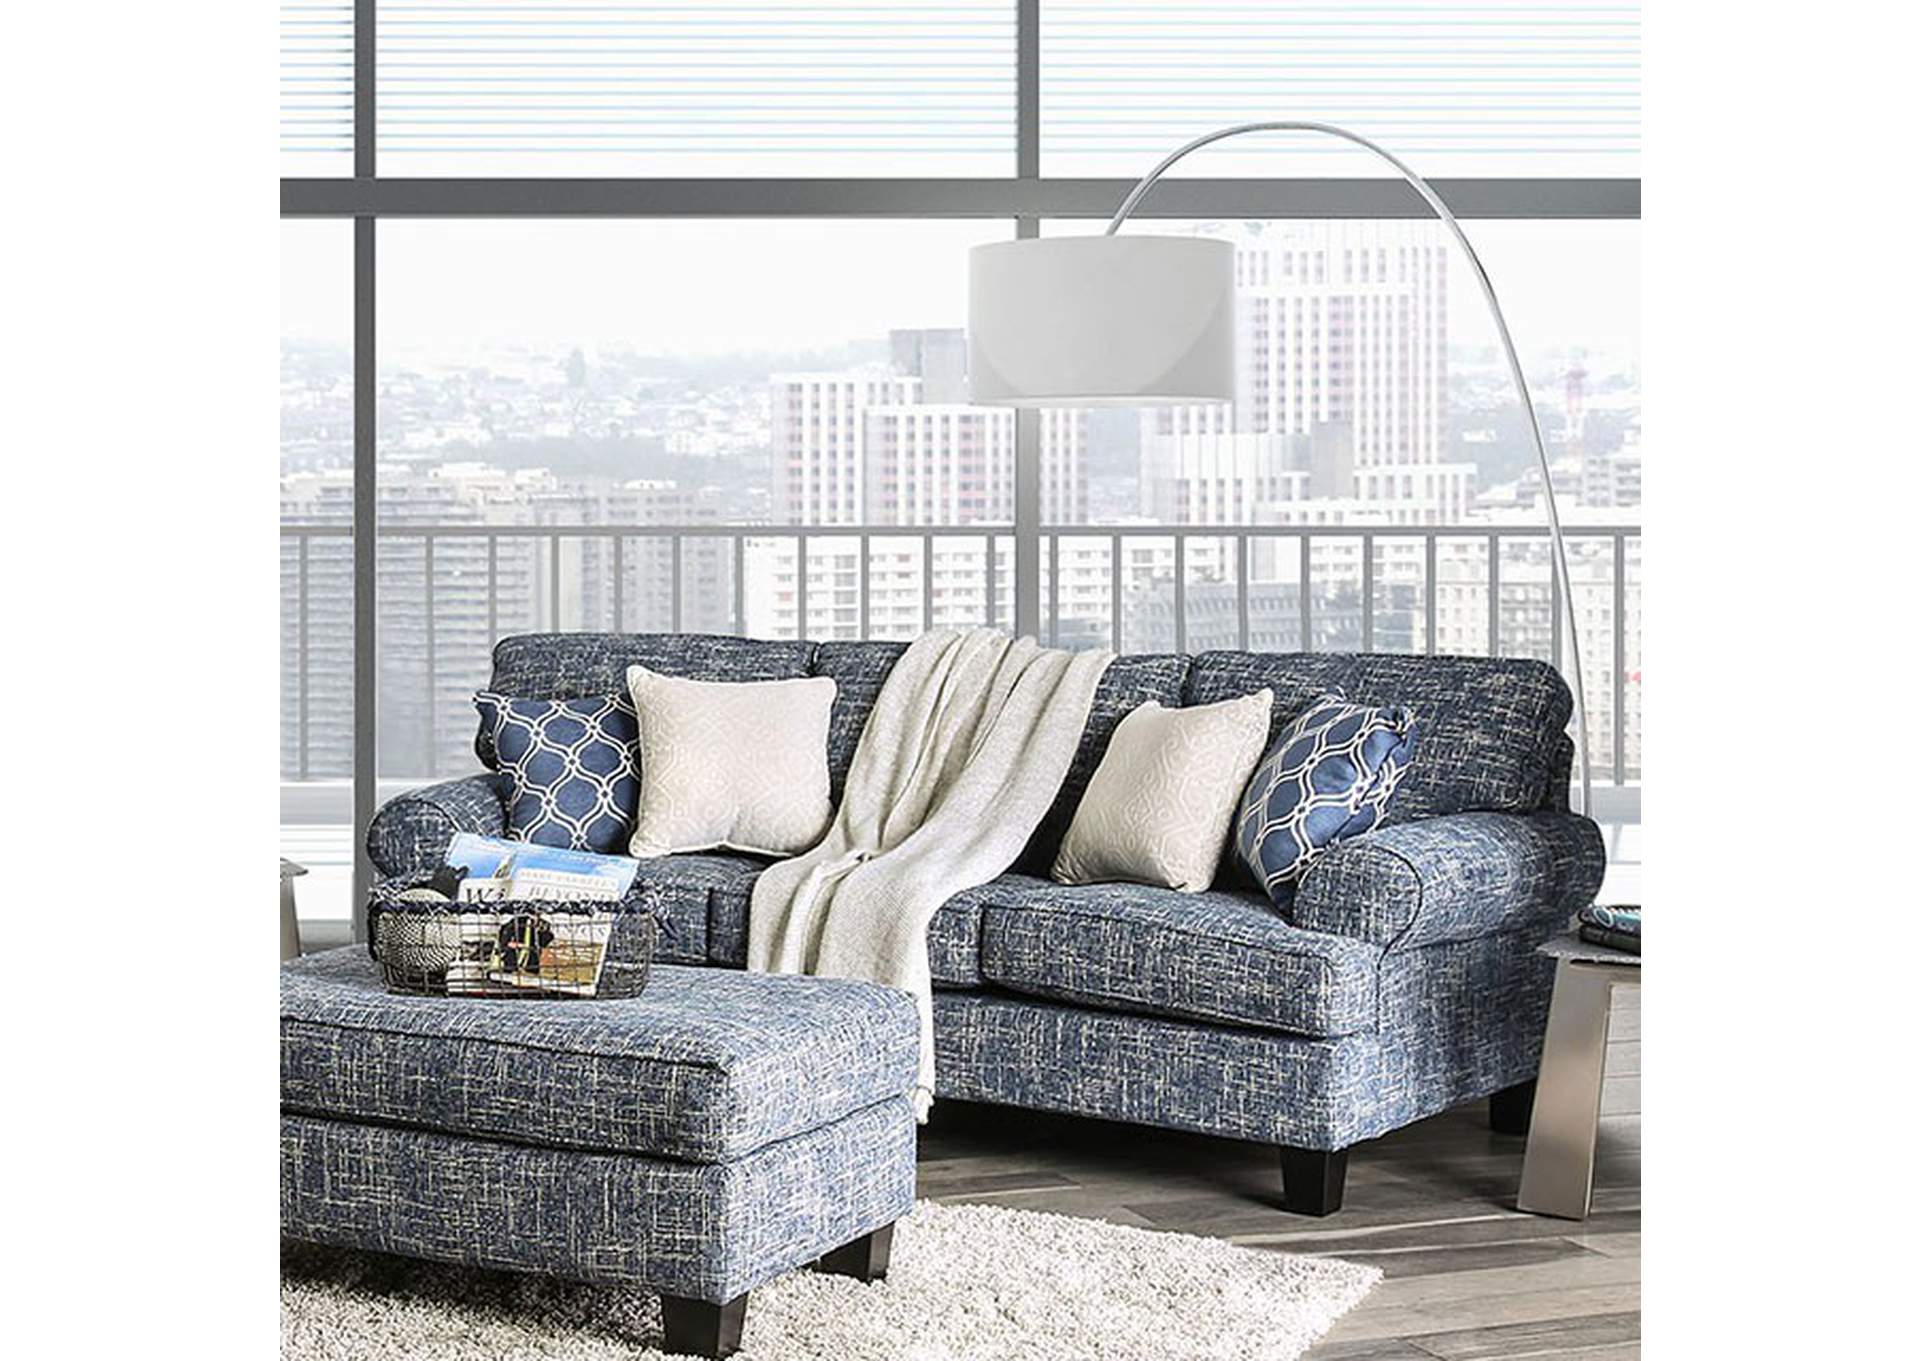 Pierpont Blue Sofa,Furniture of America